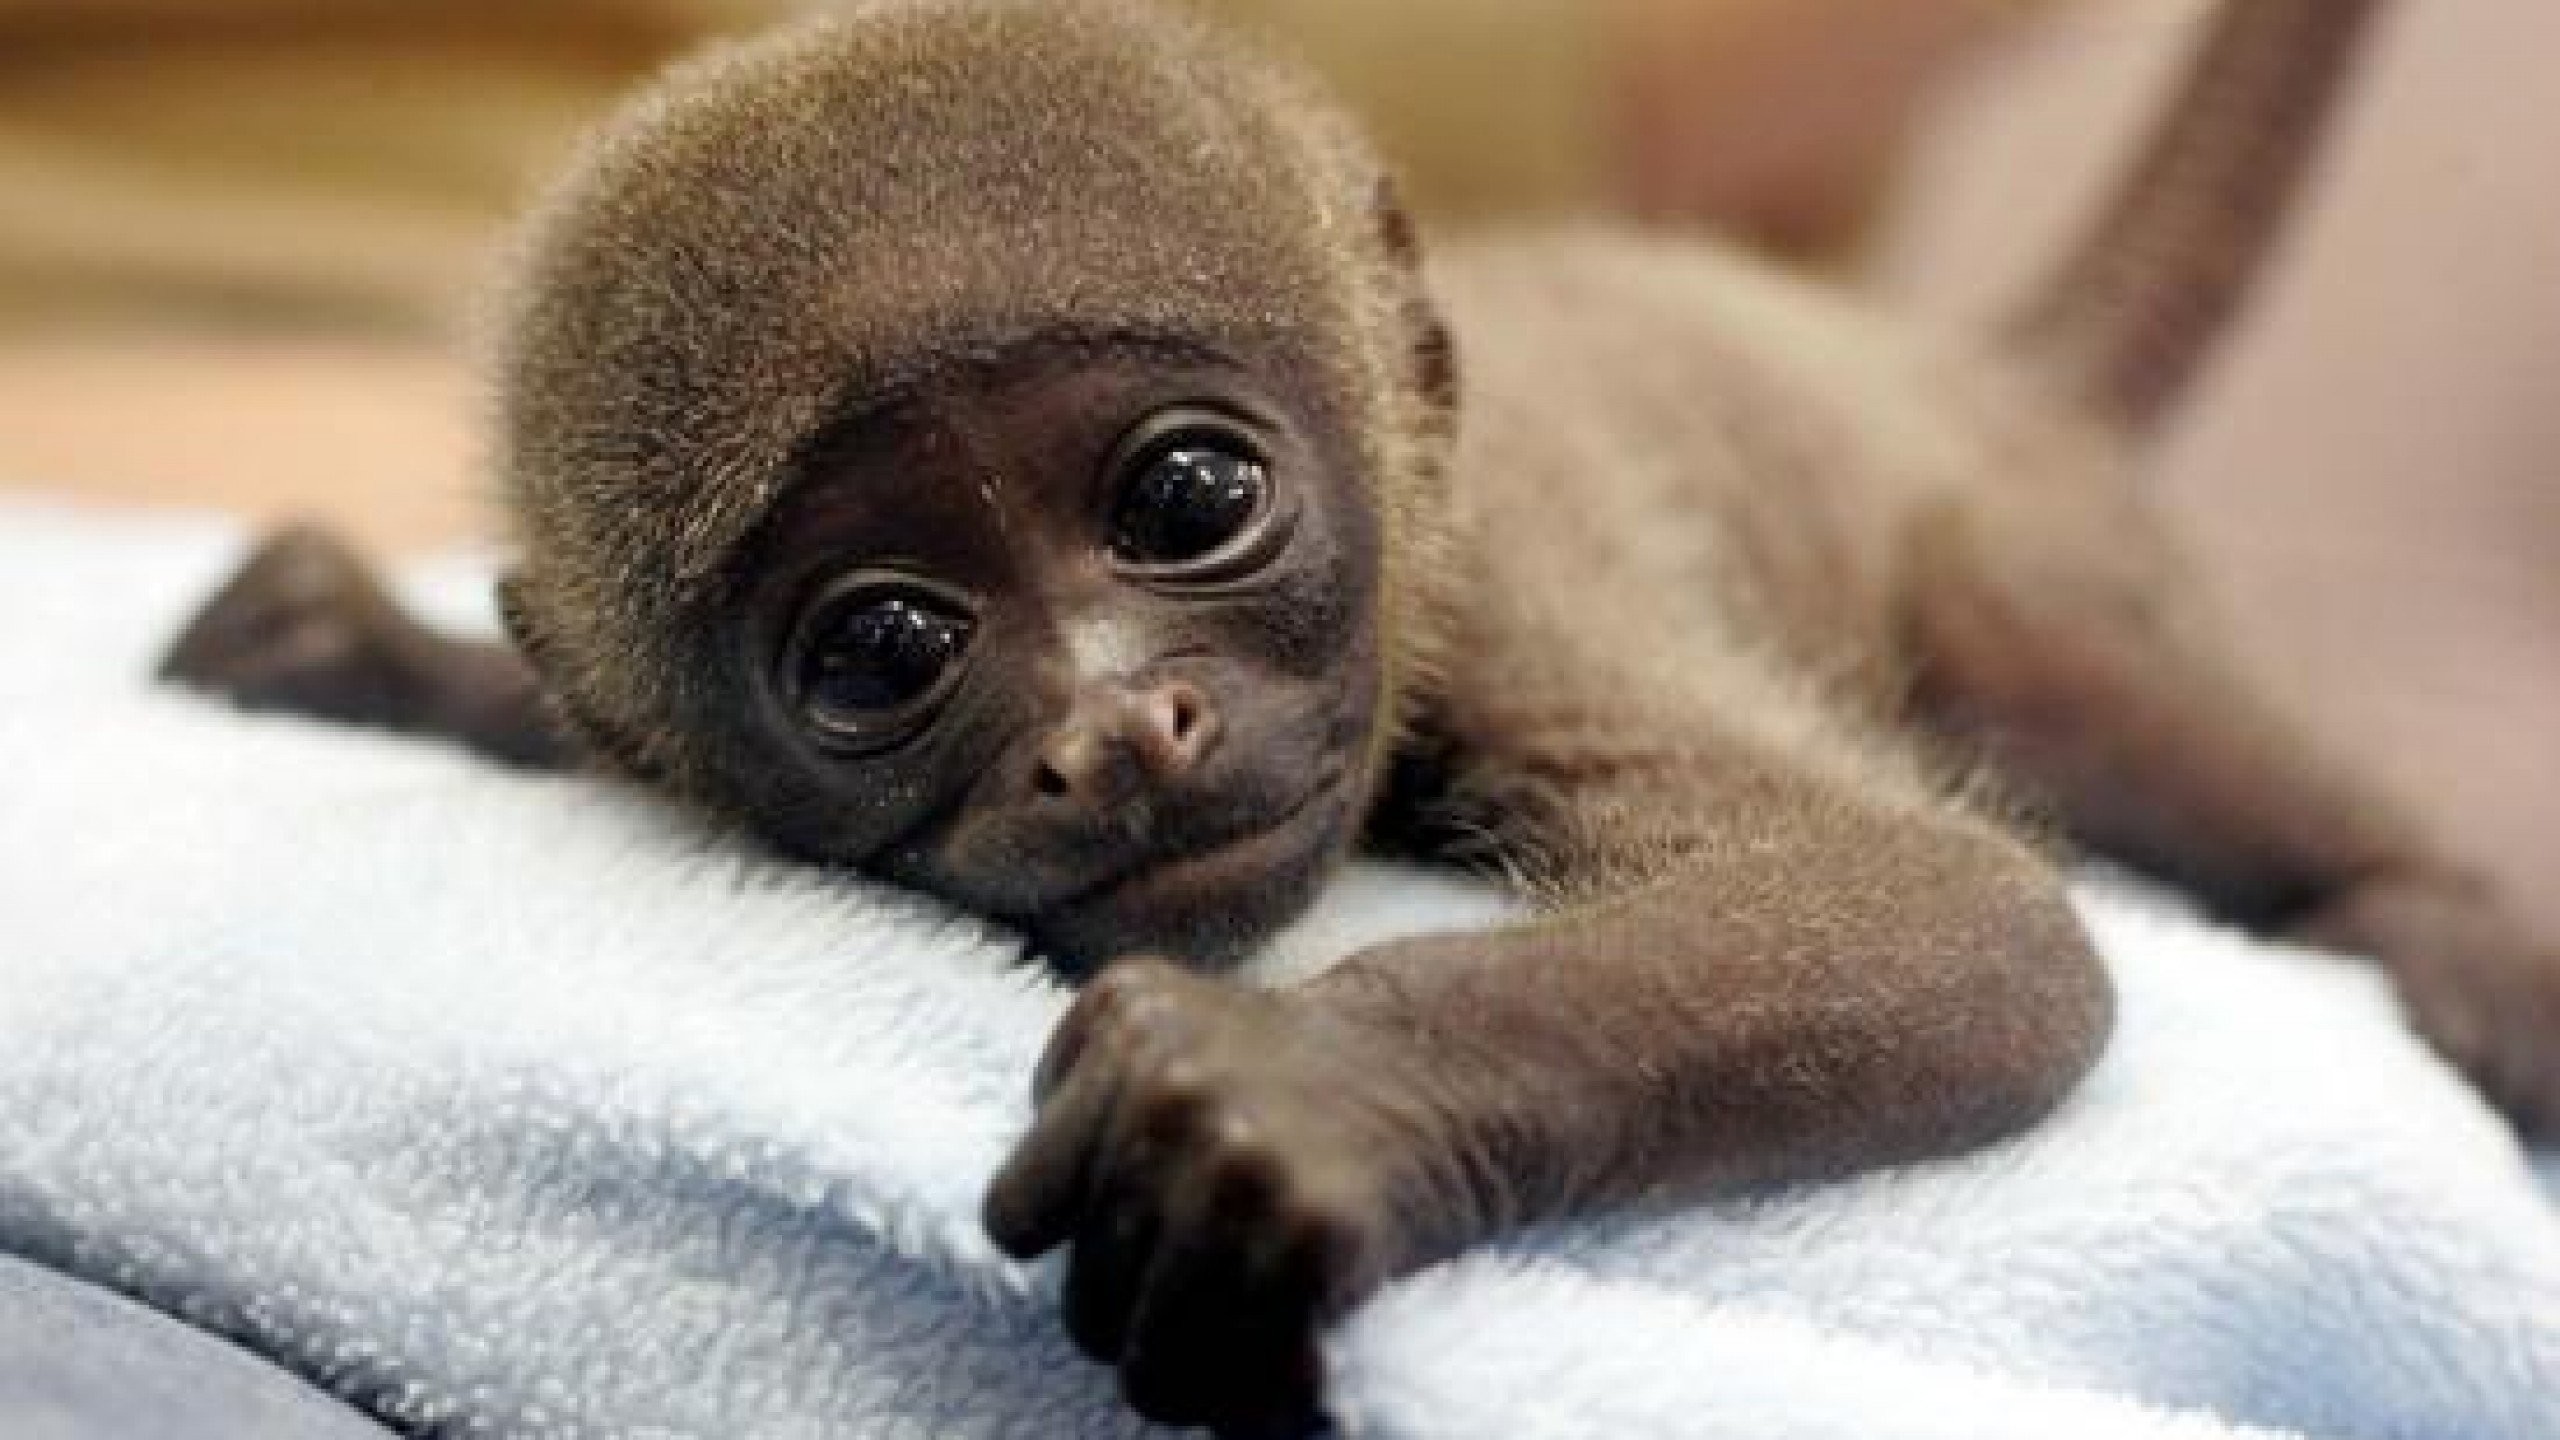 cute monkey baby